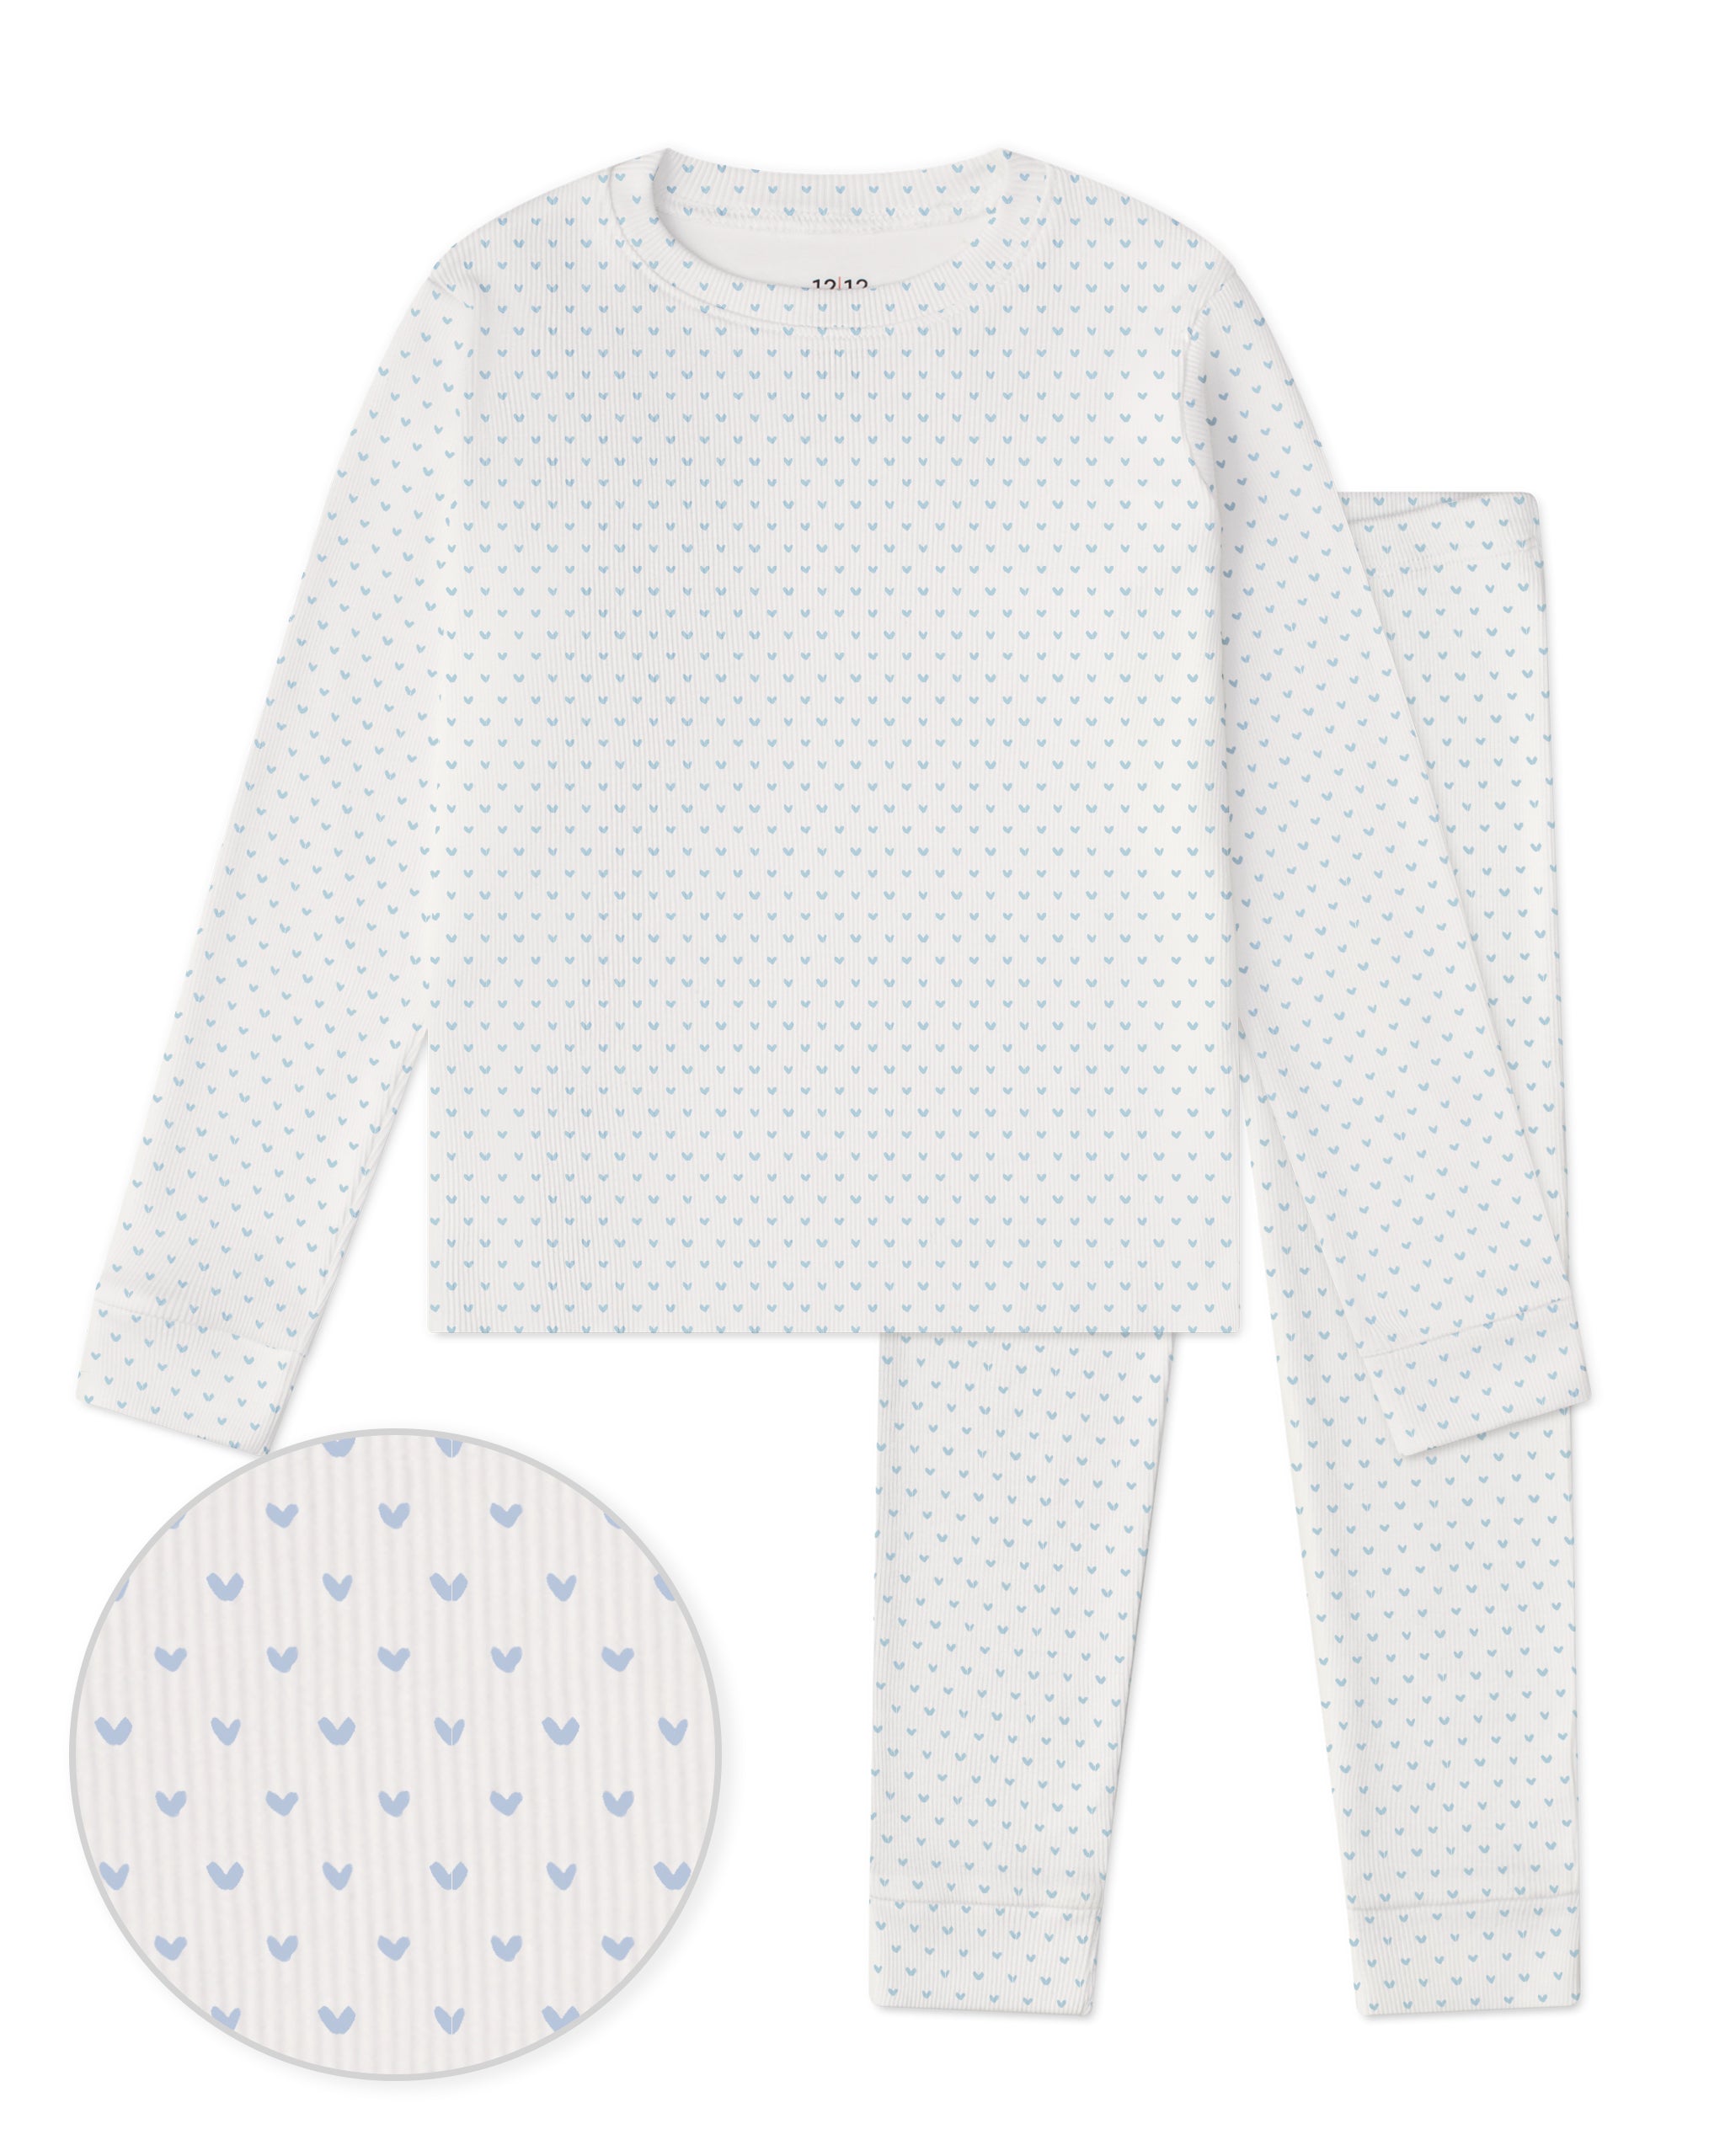 OEKO-TEX Standard 100] Beige Ribbed Baby Pajama Set